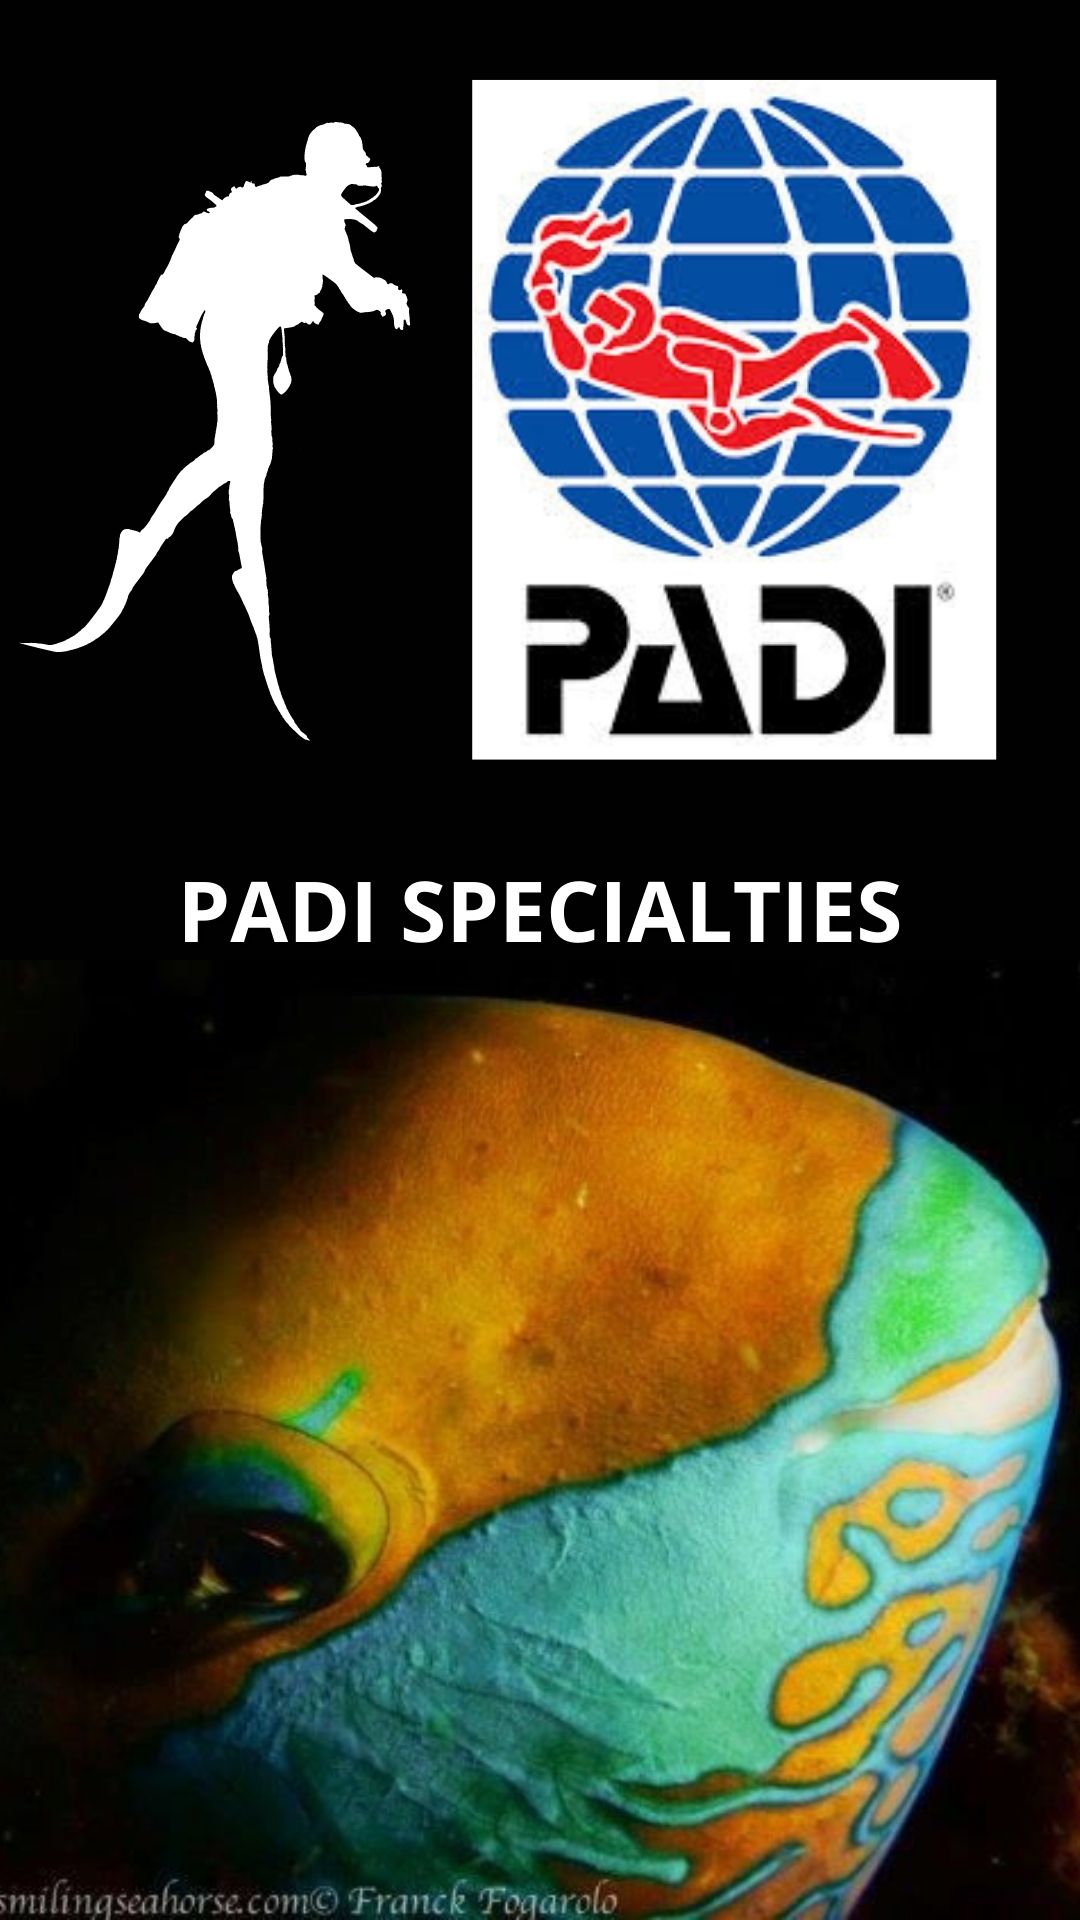 Les spécialités PADI disponibles à bord : 6000 THB chacune.